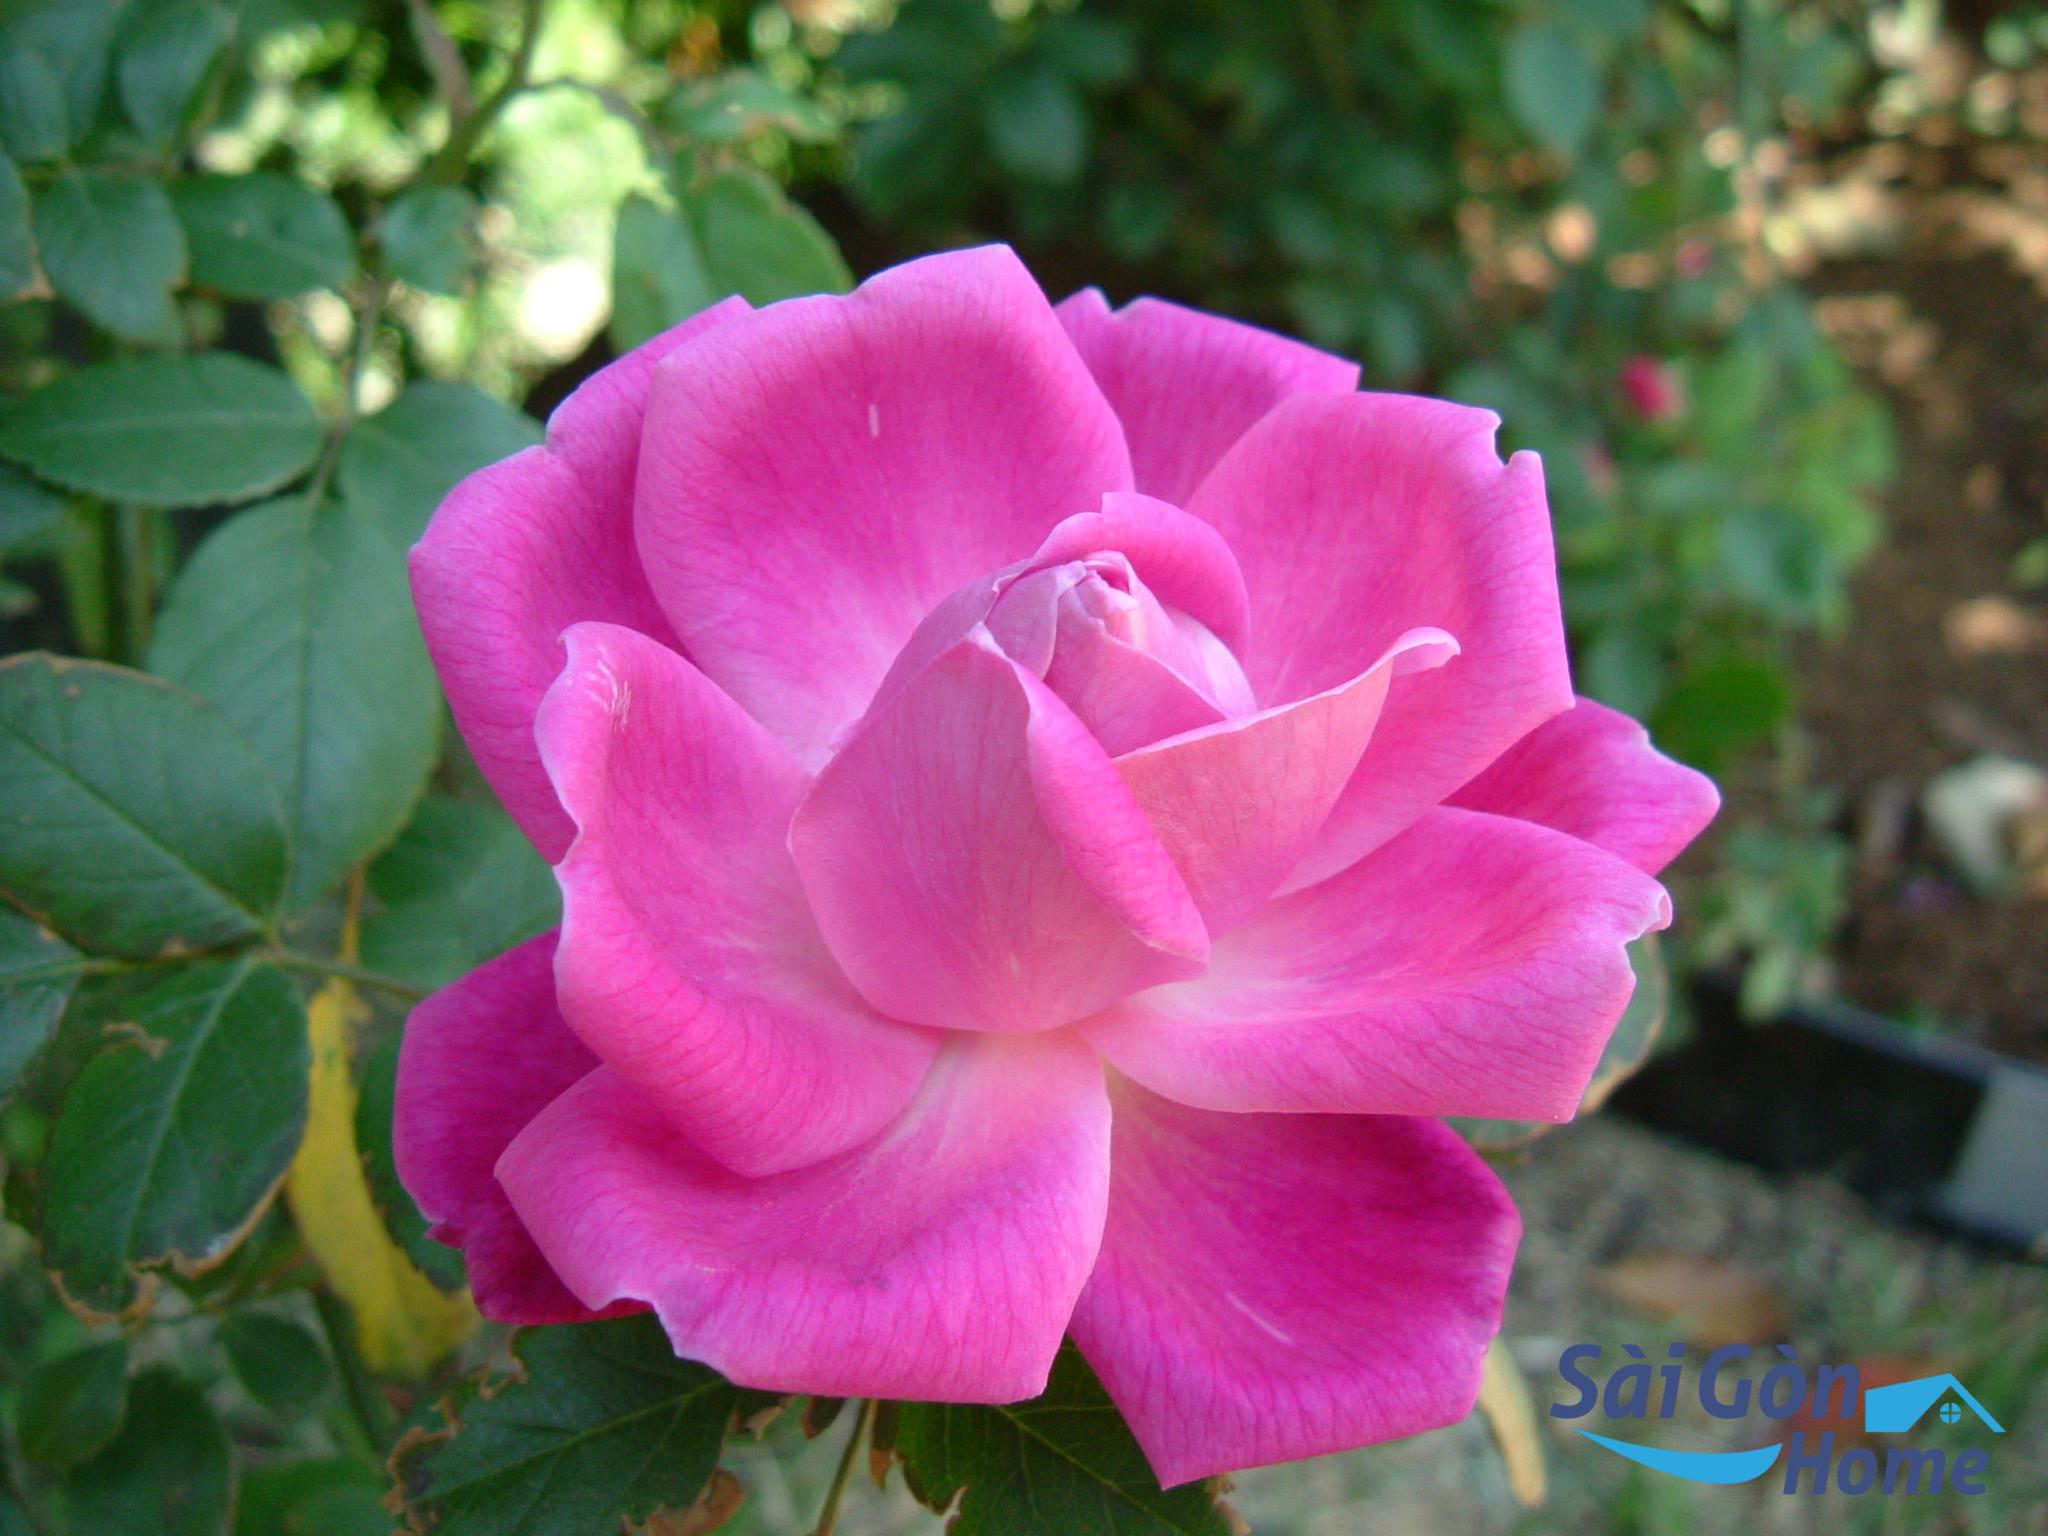 Hoa hồng là loài hoa phong thủy đẹp được nhiều người lựa chọn để trưng bày trong nhà